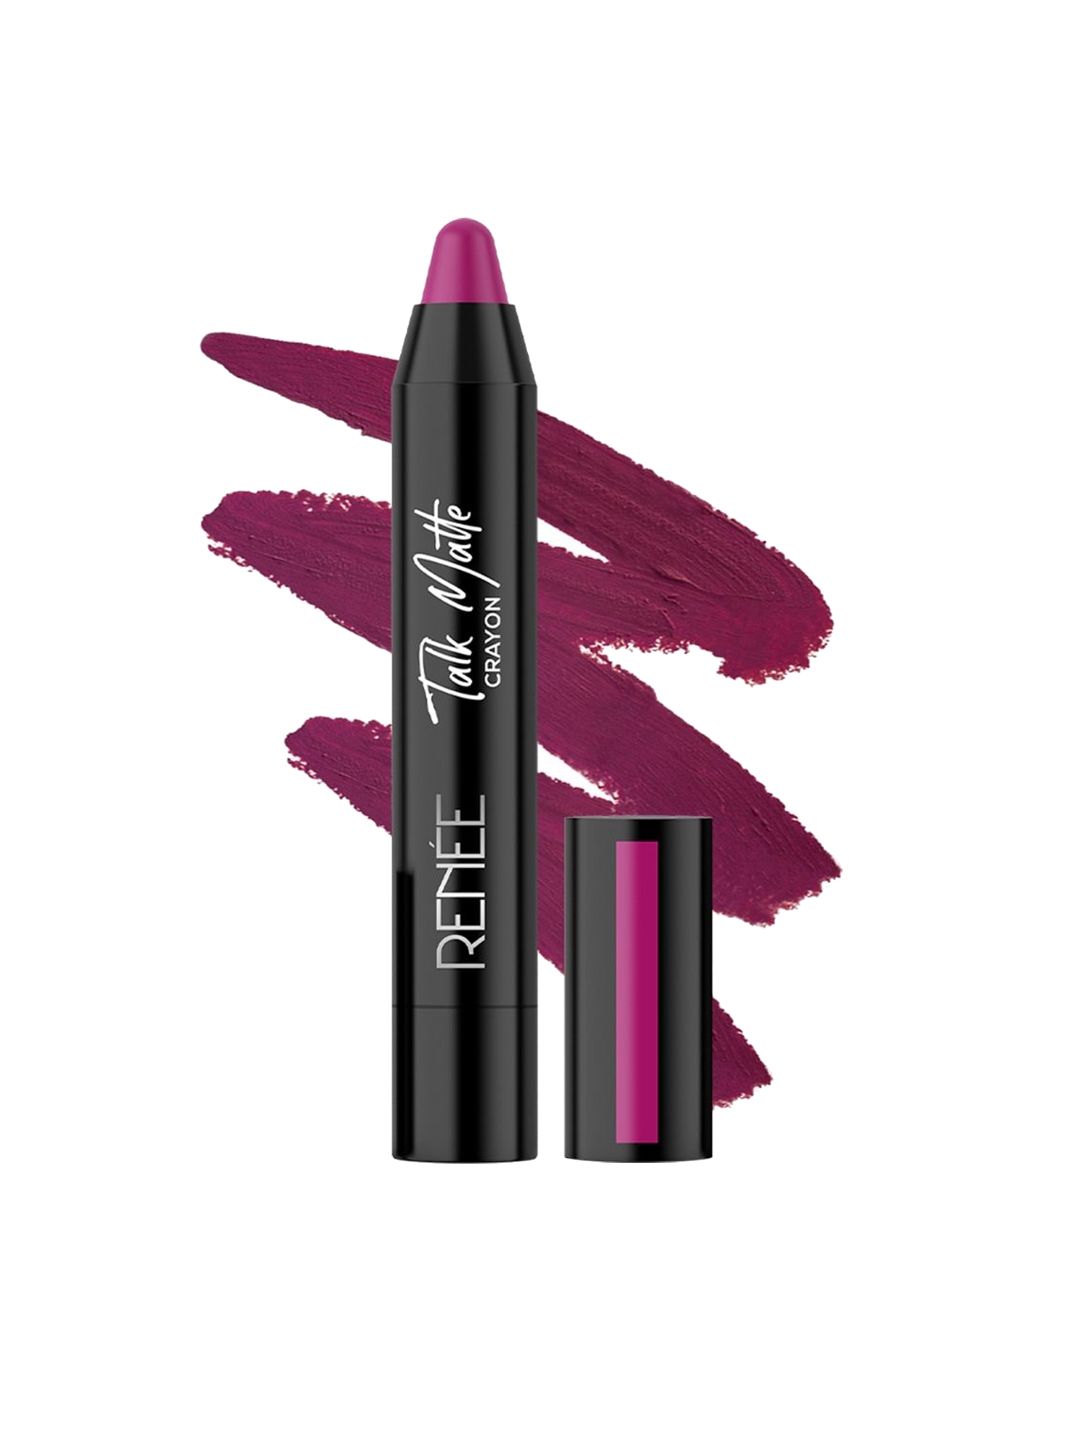 RENEE Talk Matte Crayon Lipstick - Magenta Glaze 4.5g Price in India